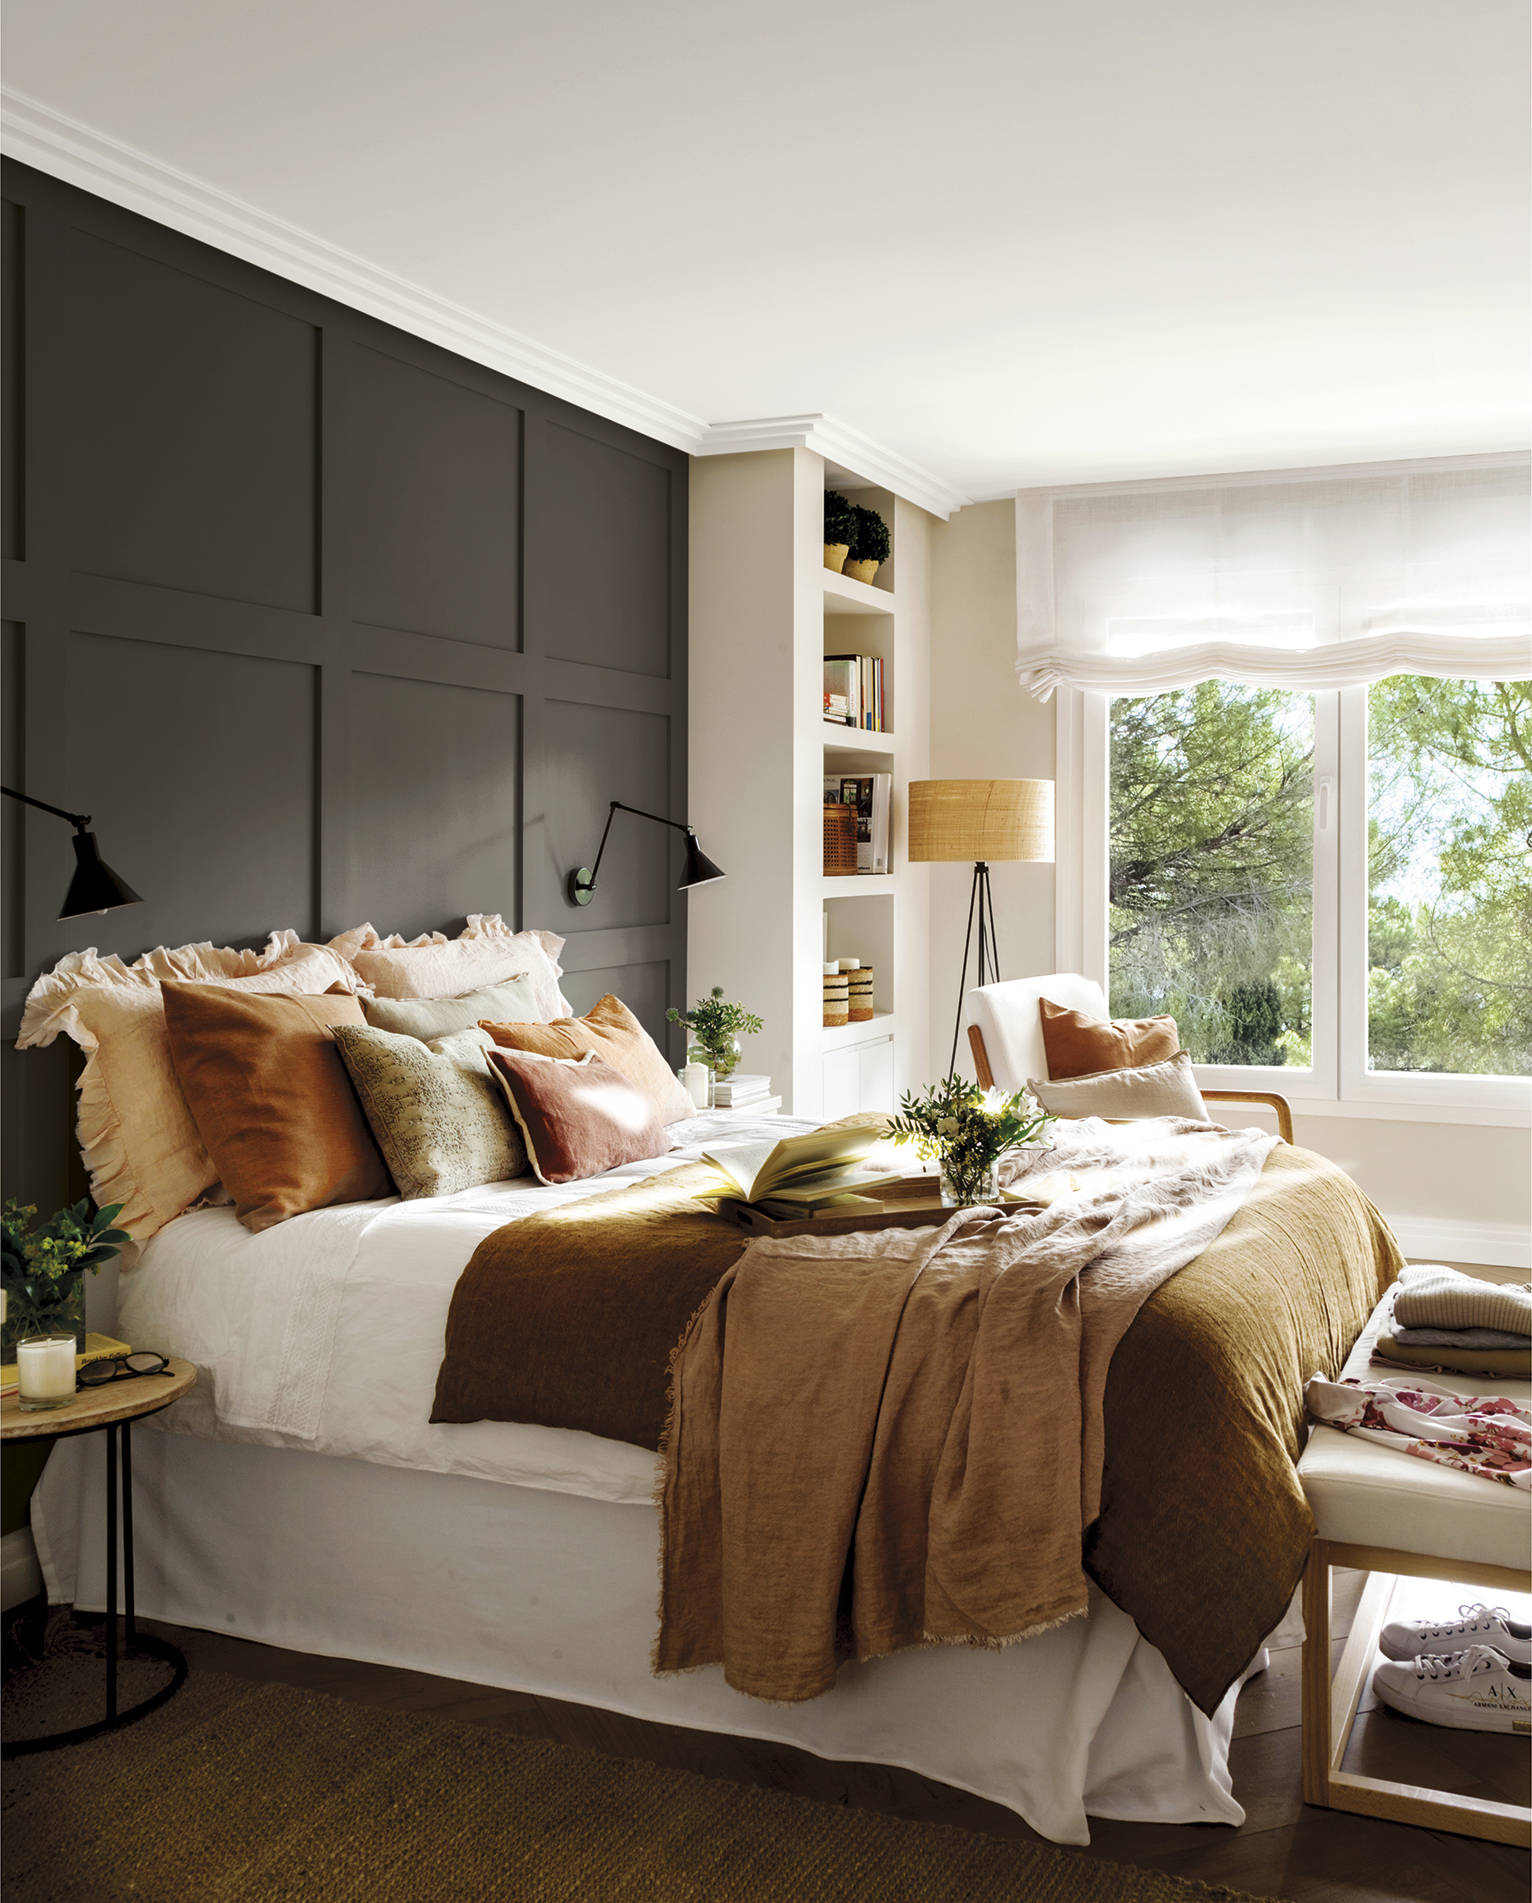 Dormitorio con cabecero panelado de cuarterones en gris oscuro y ropa de cama en tonos terrosos.